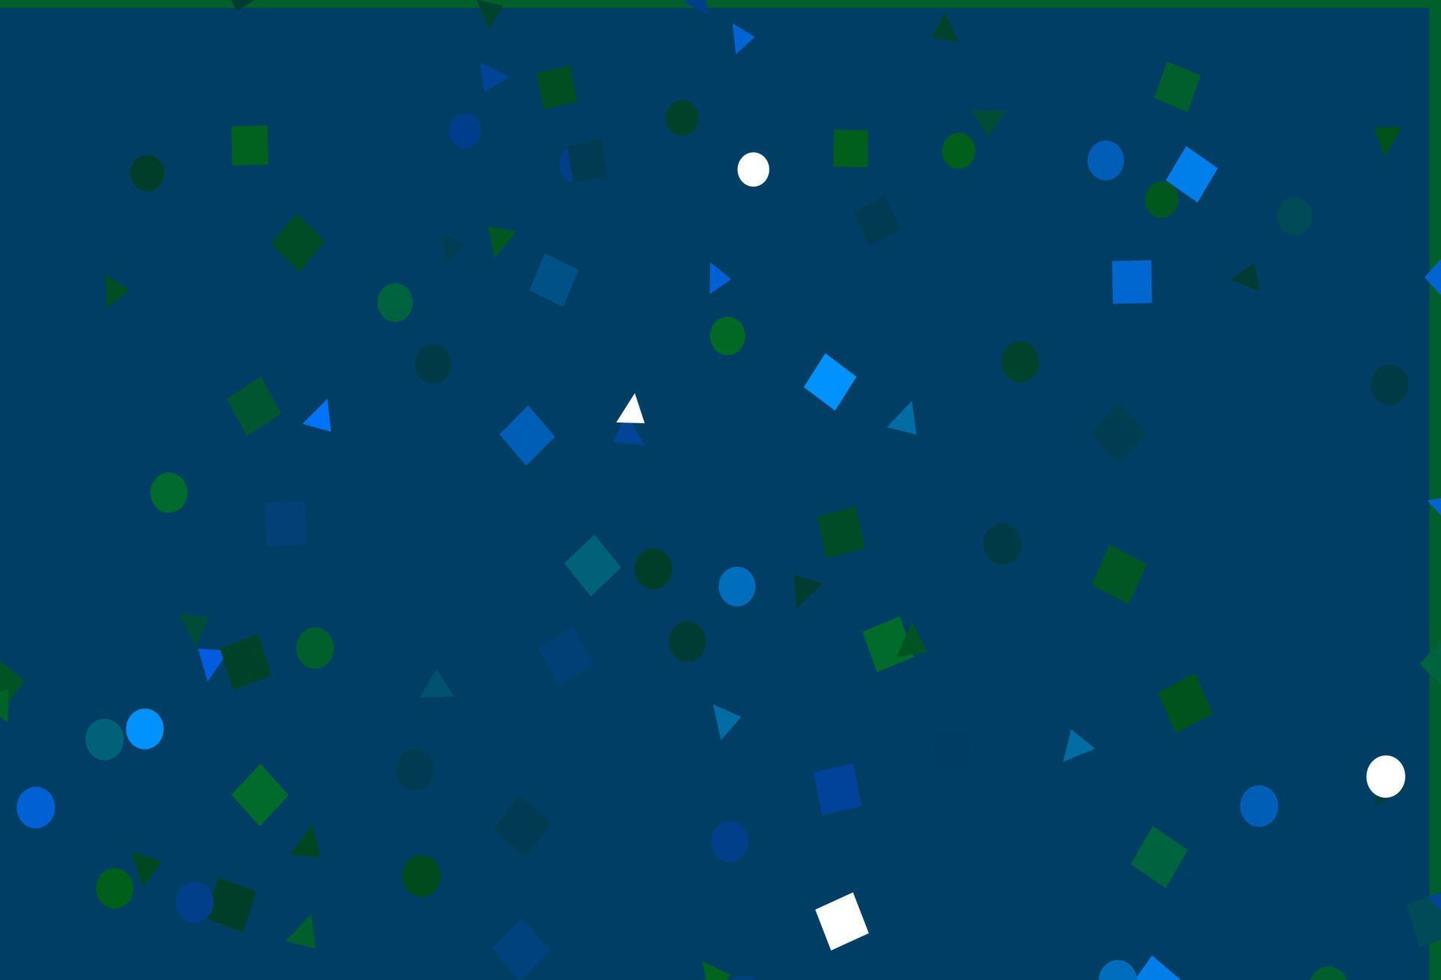 ljusblå, grön vektorbakgrund med trianglar, cirklar, kuber. vektor